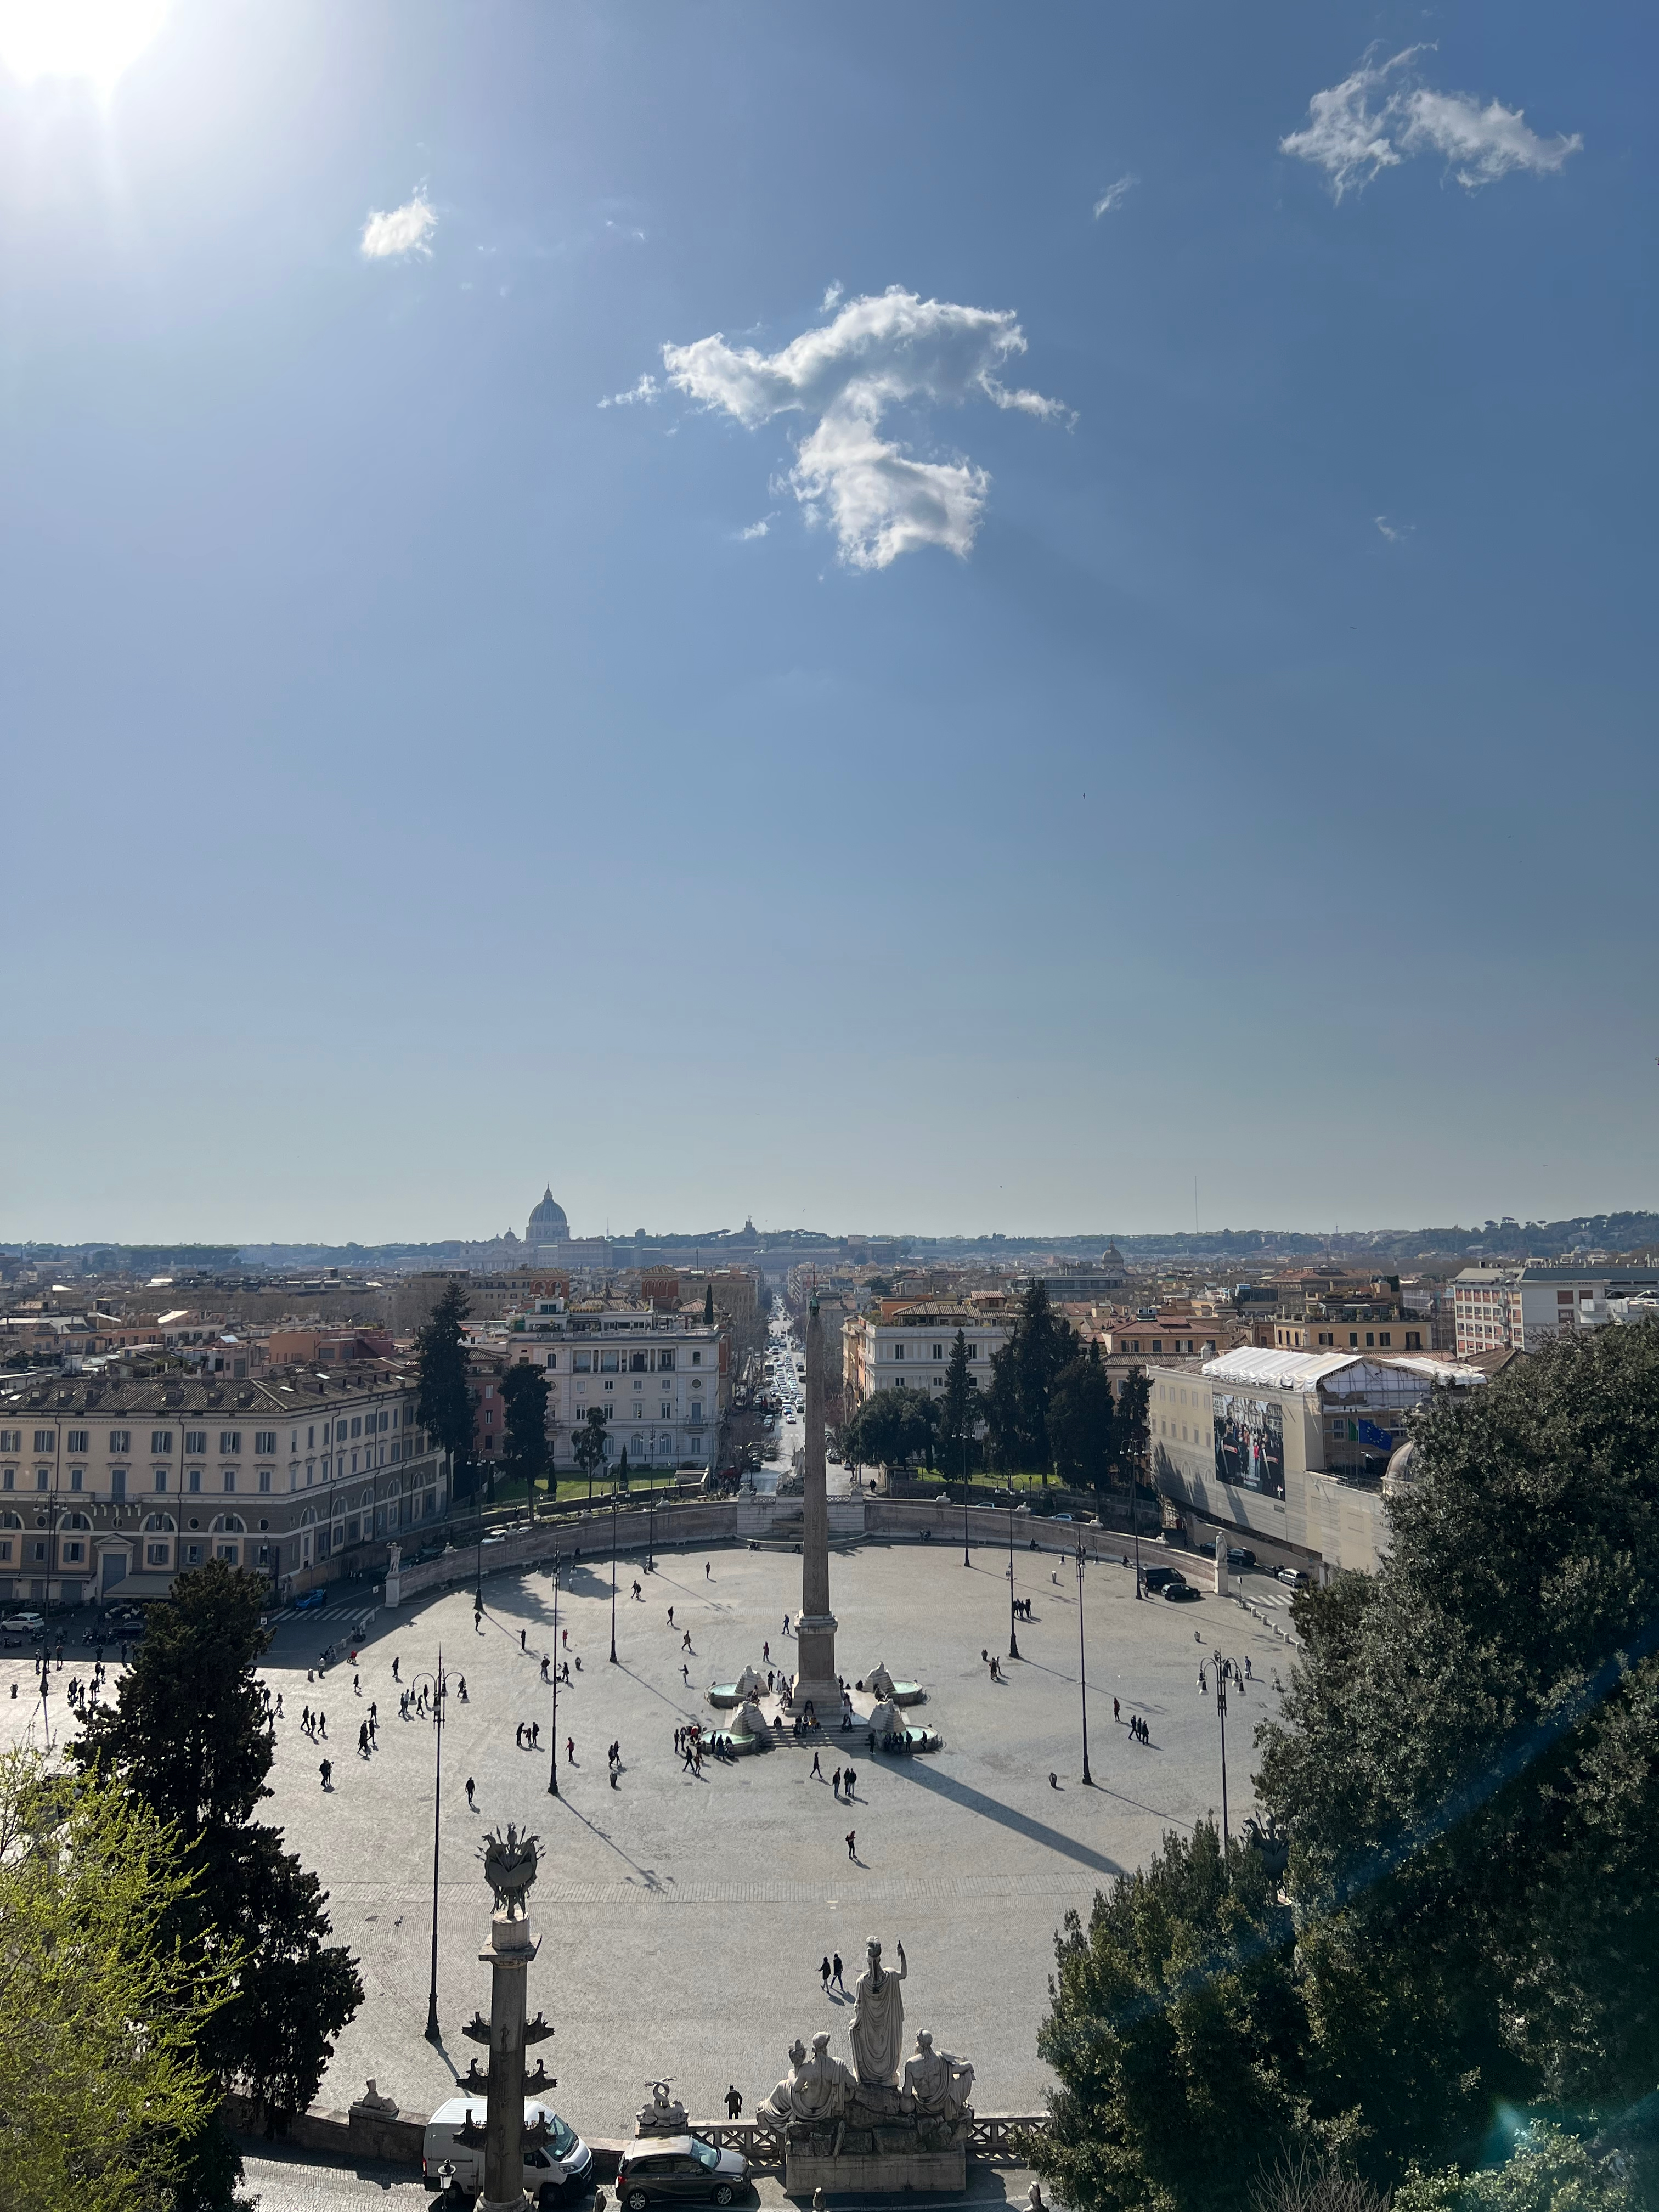 View from the Terrazza del Pincio to the Piaza of the Popolo